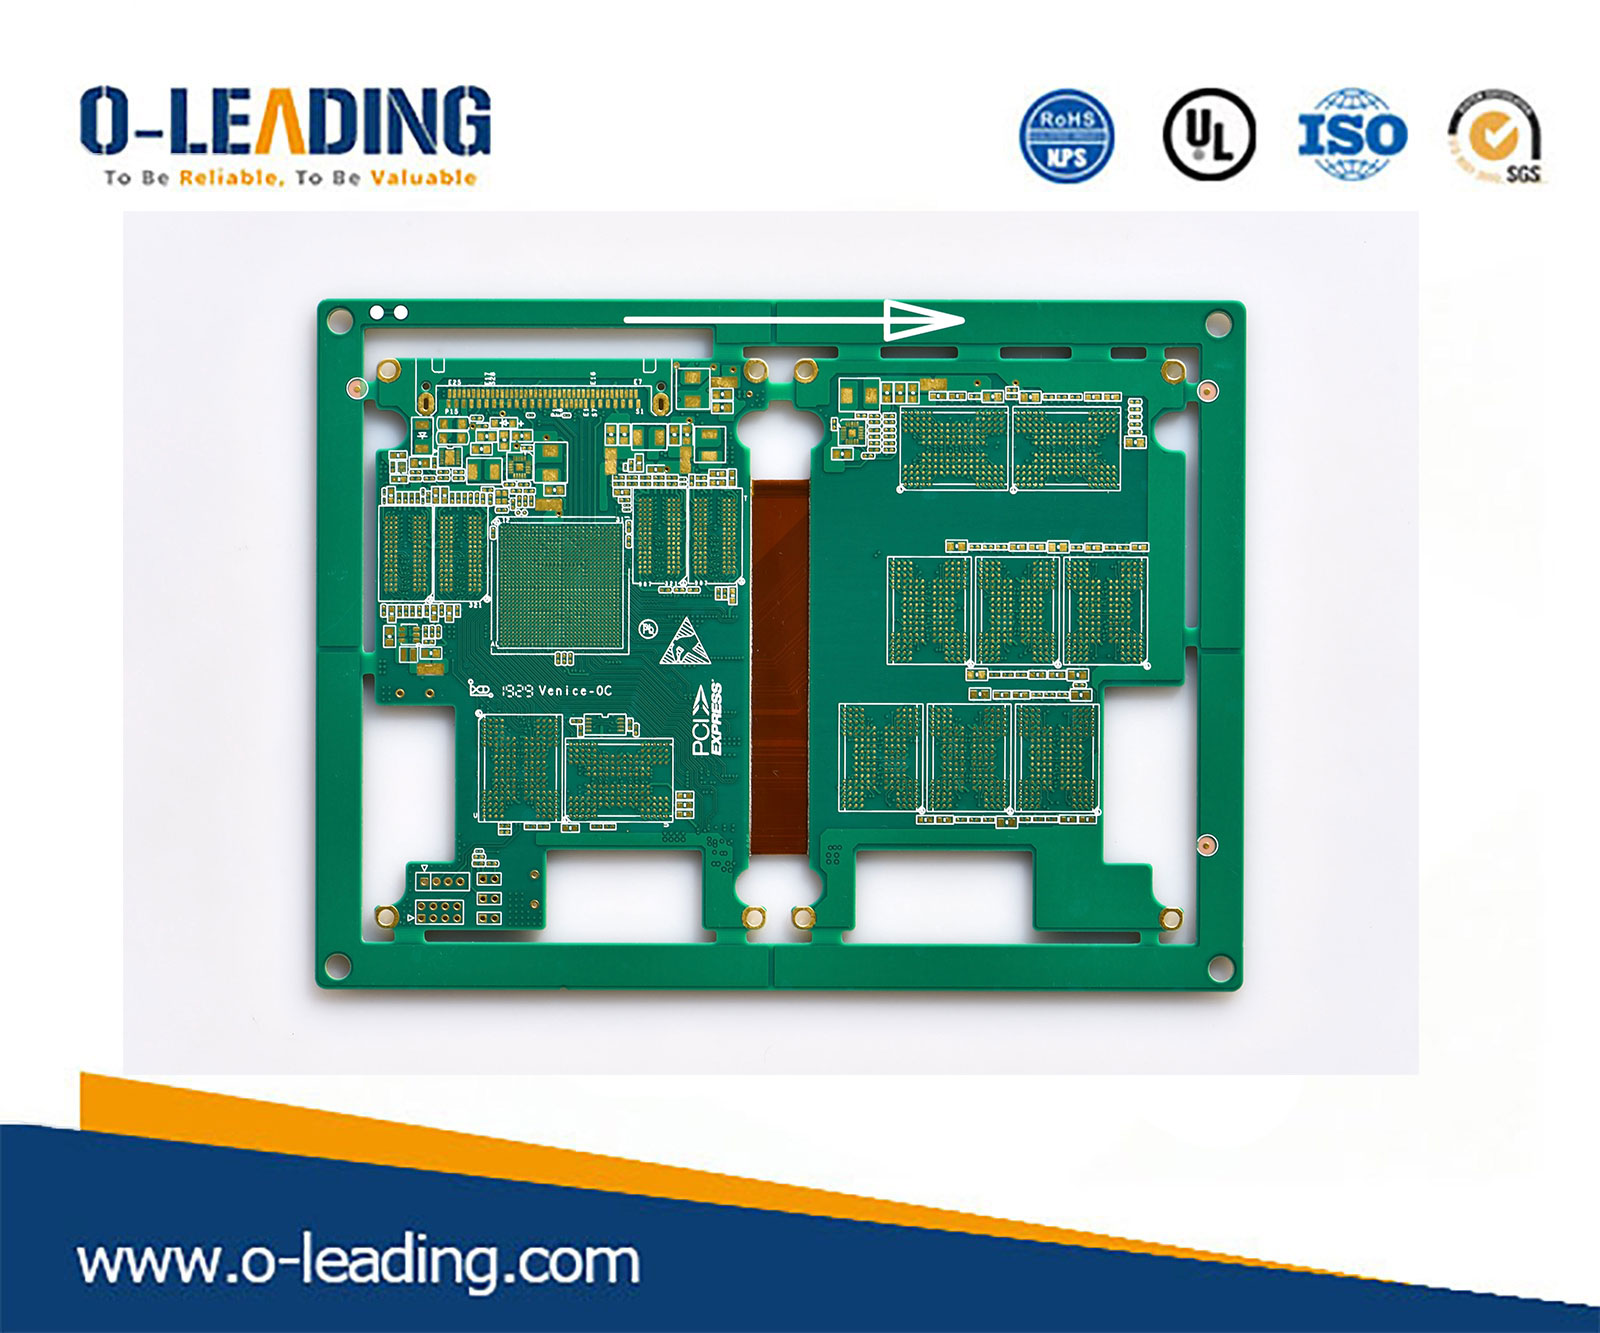 PCB in rame spesso a basso prezzo, tecnologia PCB rigida, produttore di PCB flessibile in Cina